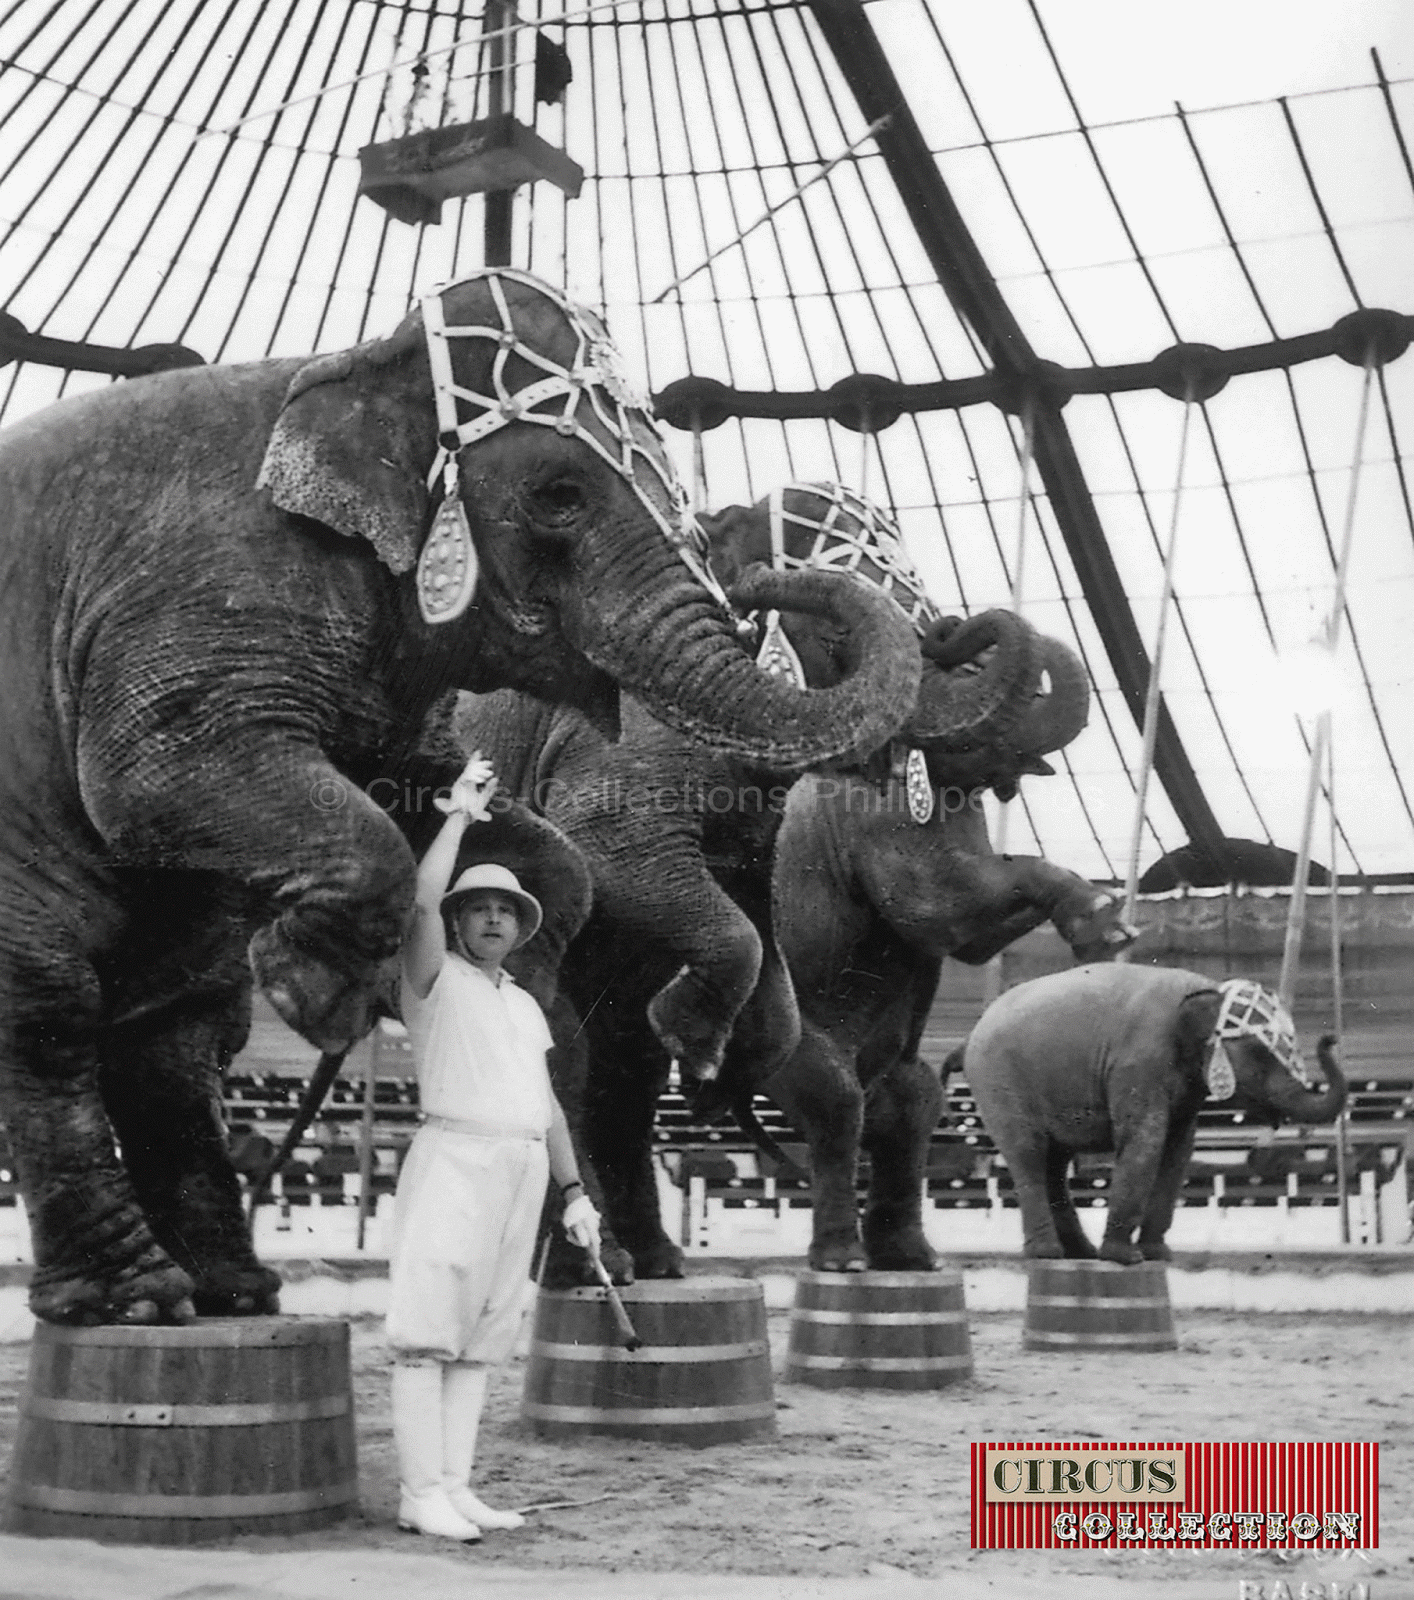 sous les ordres de Charles Knie 4 éléphants du Cirque Knie debout sur des tabourets 